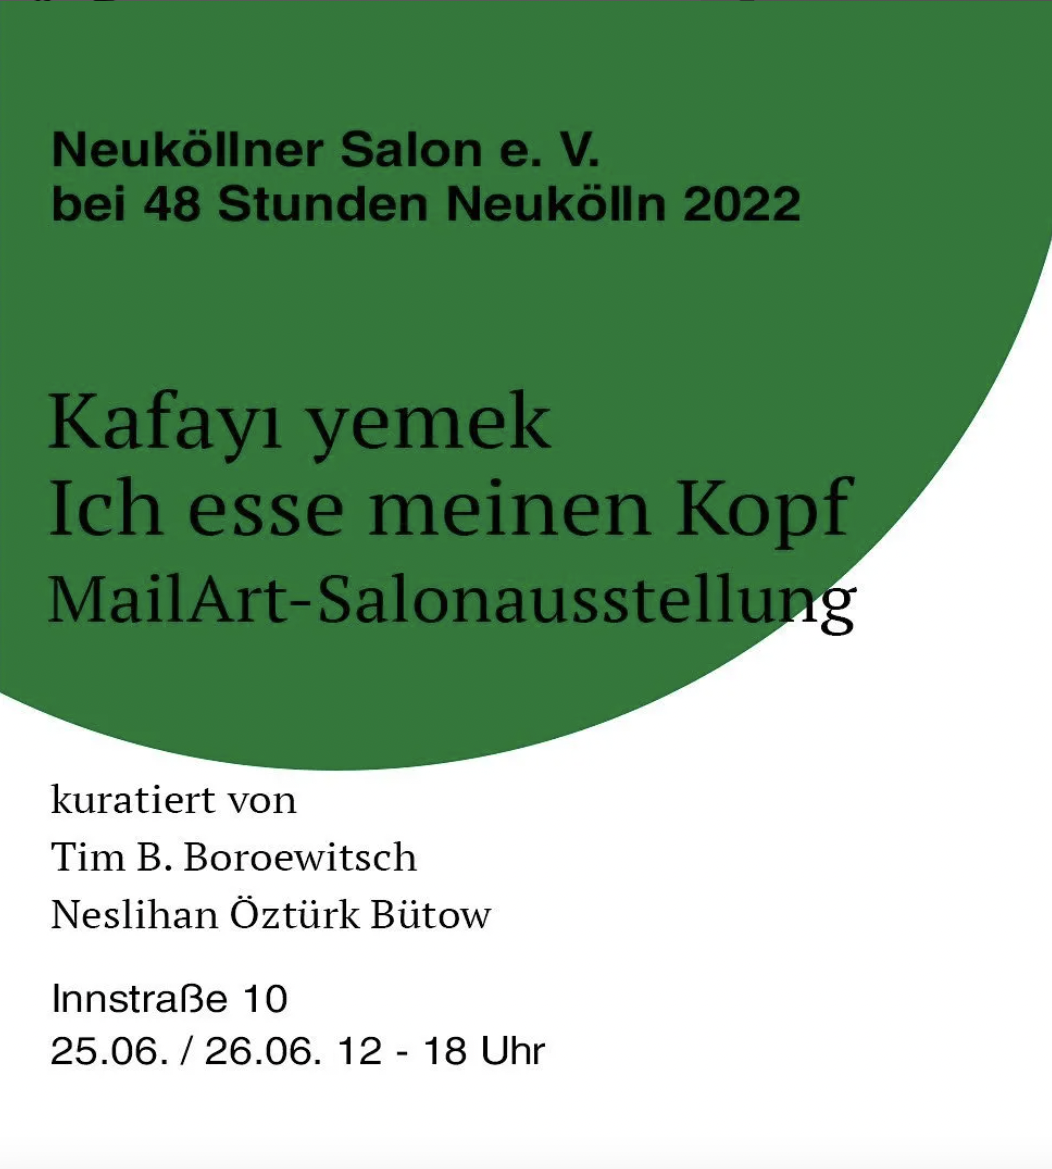 Der Neuköllner Salon e. V. bei 48 Stunden Neukölln 2022 „Kafayı yemek“